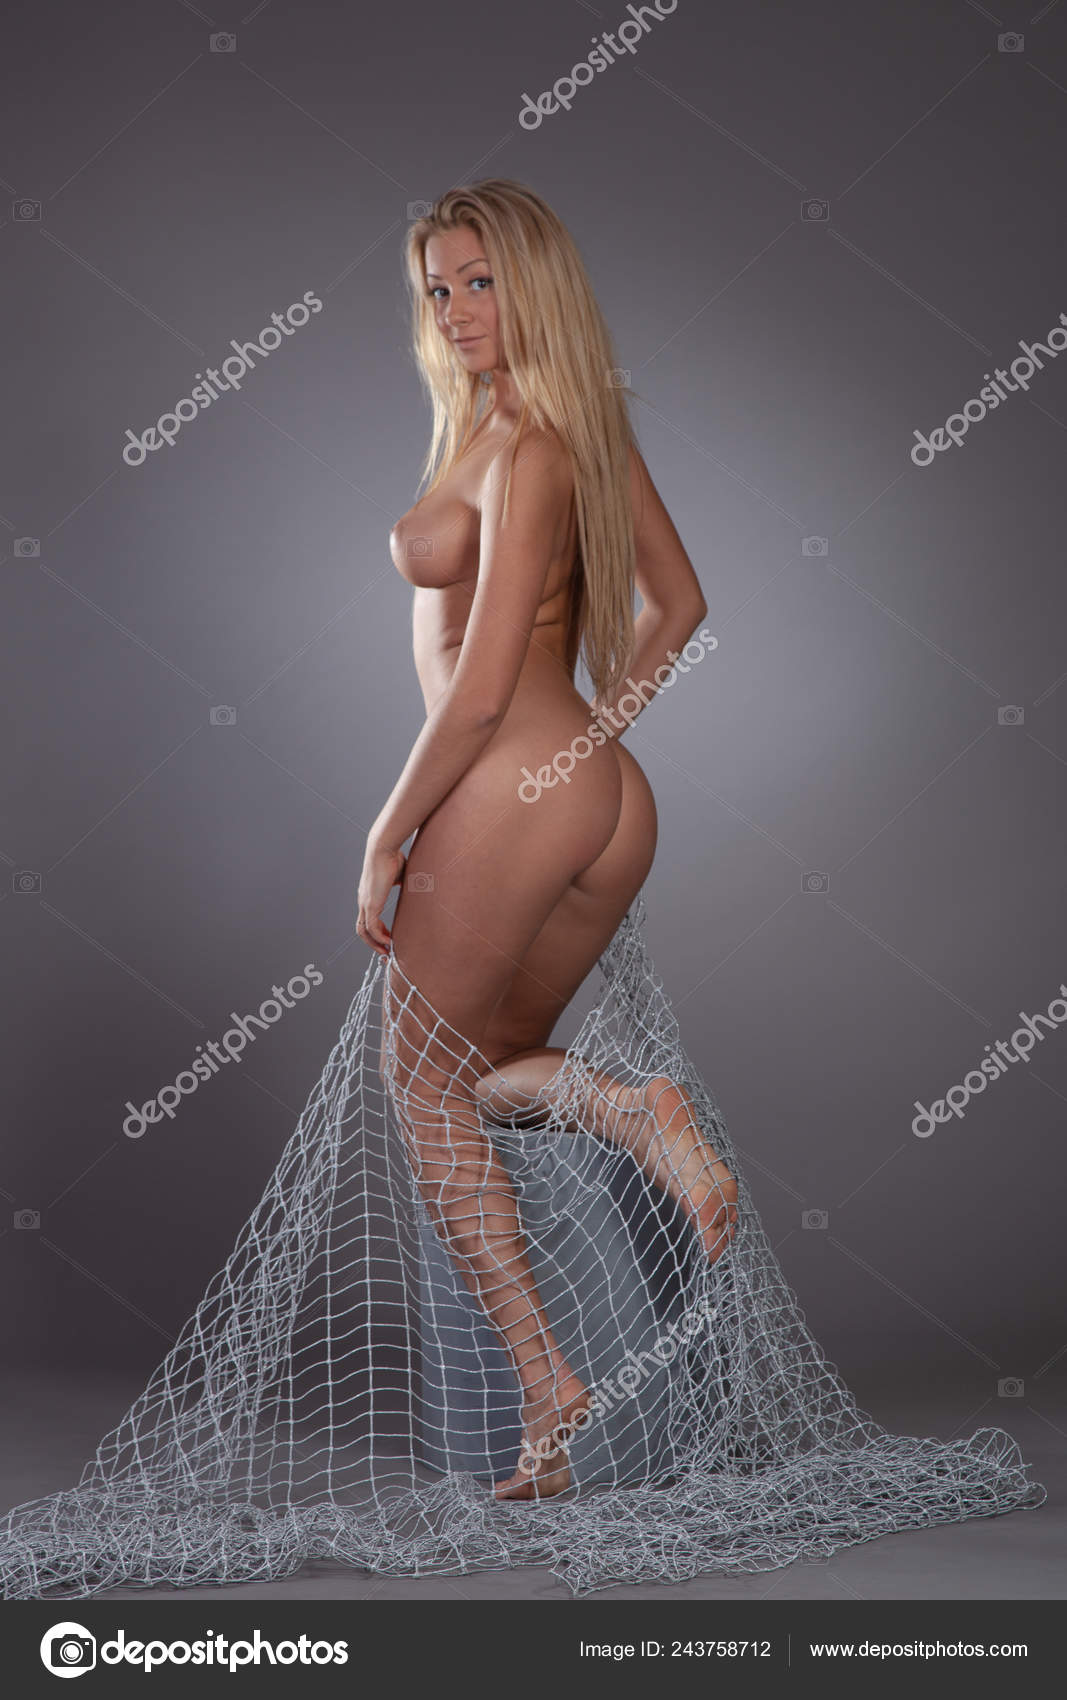 https://st4n.depositphotos.com/10086424/24375/i/1600/depositphotos_243758712-stock-photo-young-beautiful-girl-posing-nude.jpg